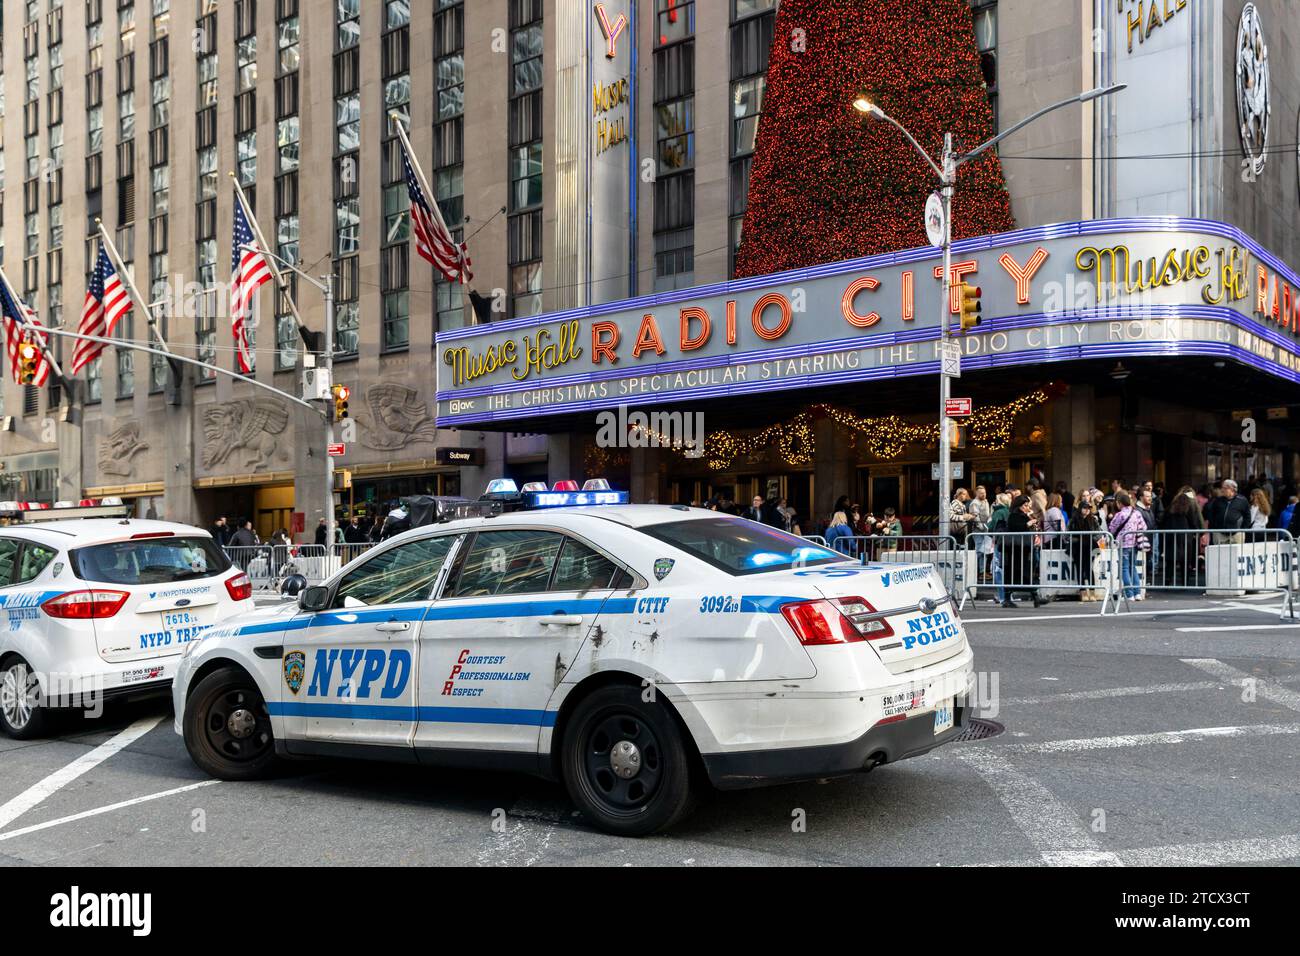 Une voiture du département de police de New York assis dans la rue à l'extérieur du radio City Music Hall pendant les vacances. Banque D'Images